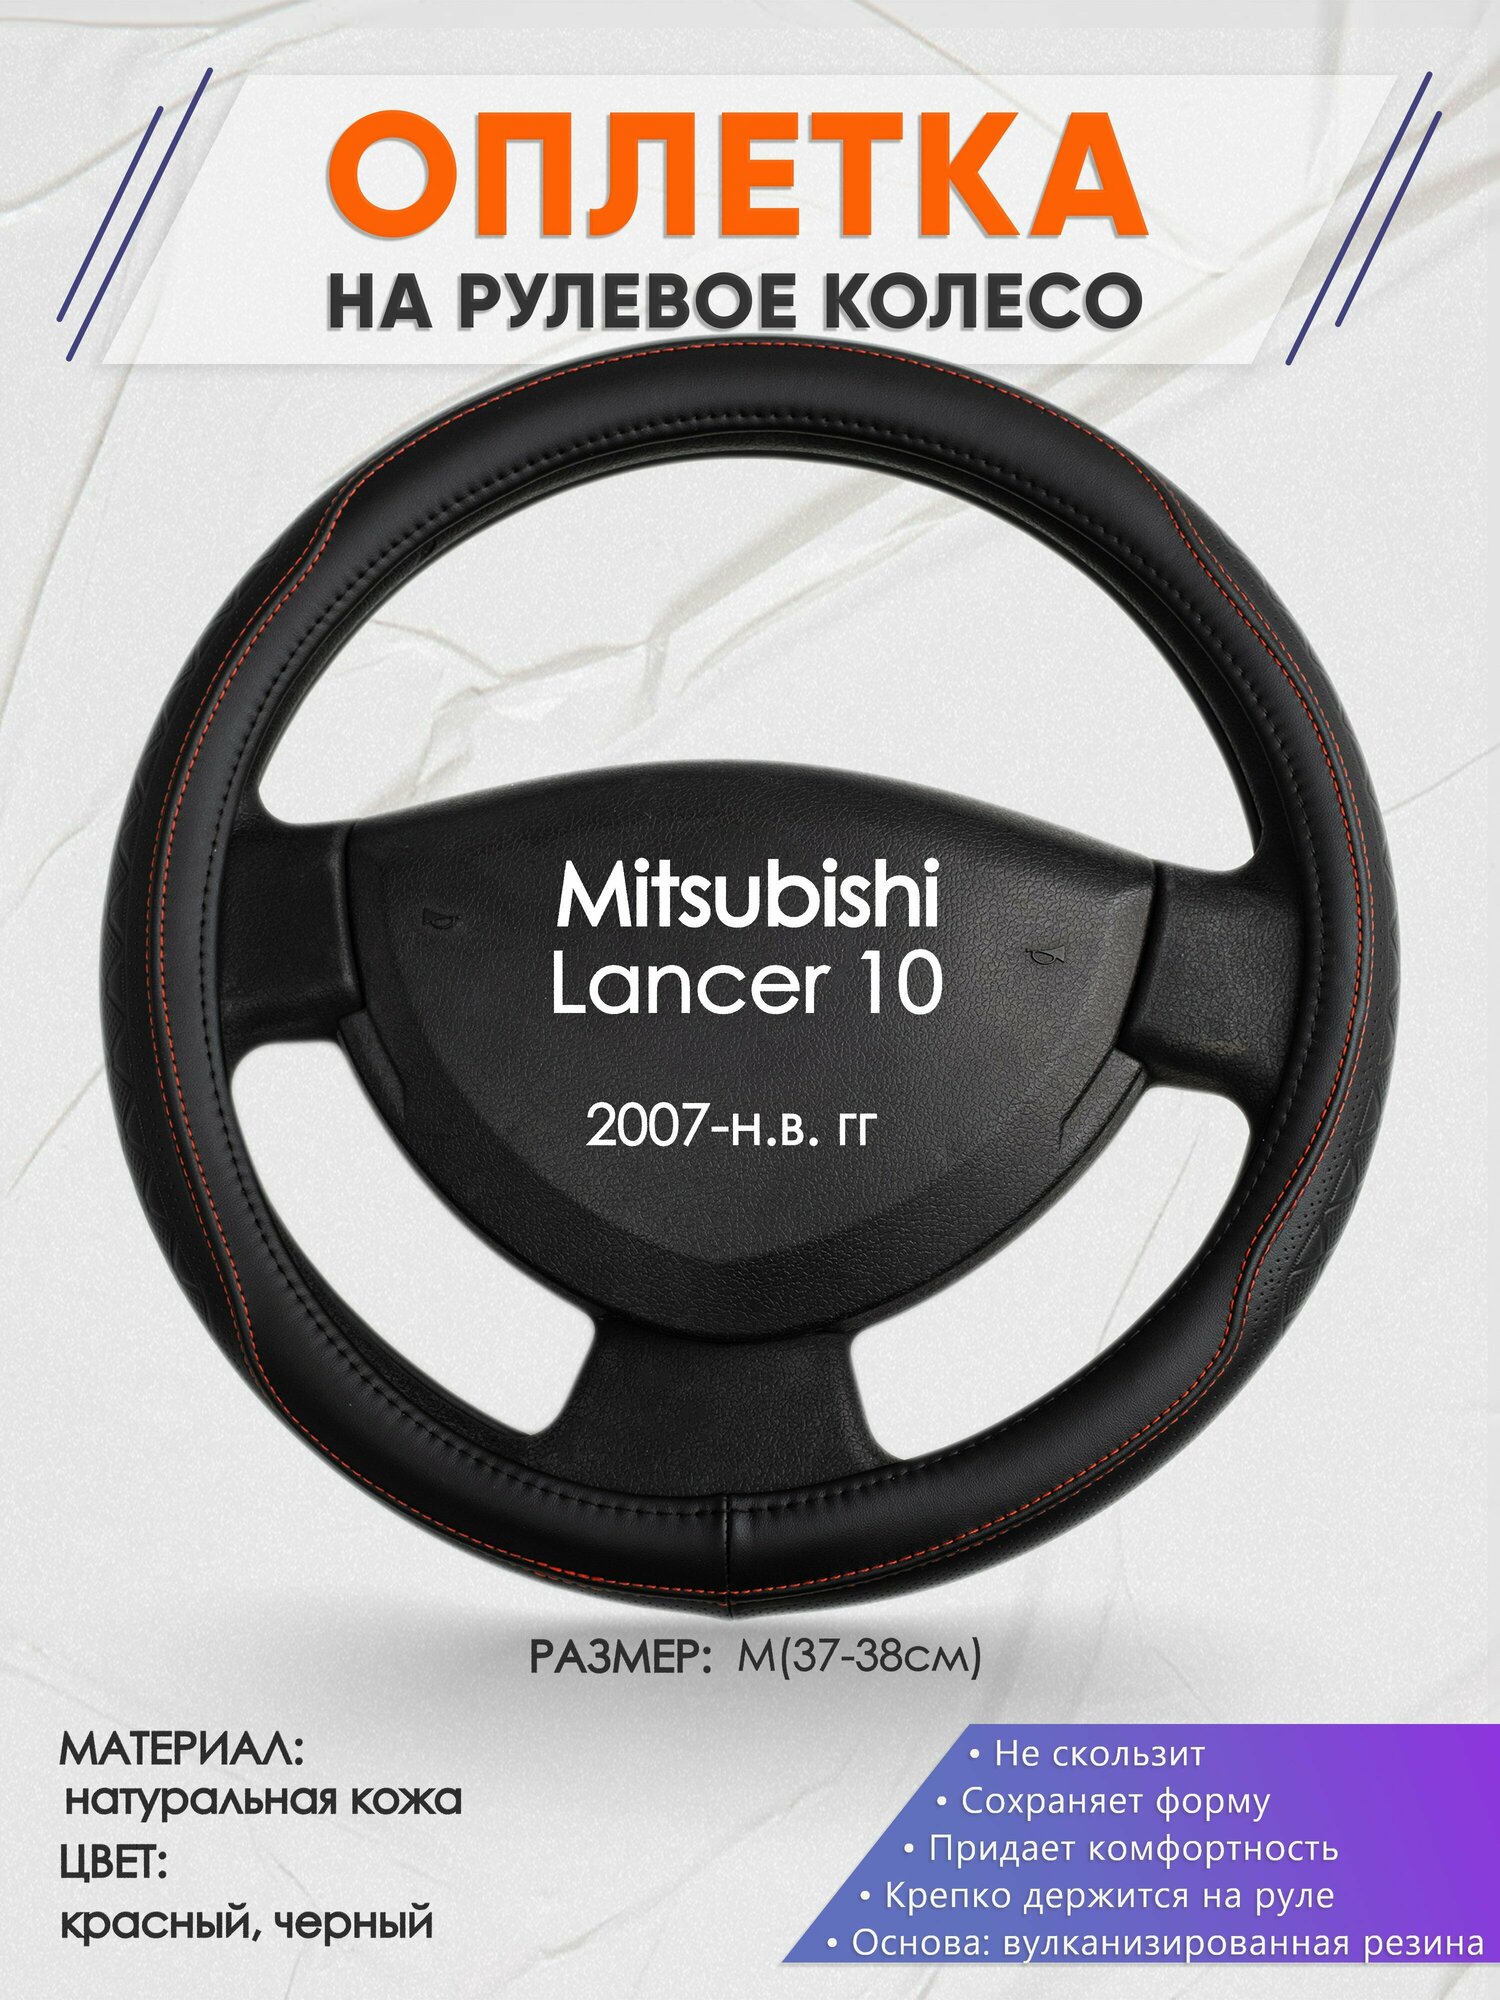 Оплетка на руль для Mitsubishi Lancer 10(Митсубиси Лансер 10) 2007-н. в, M(37-38см), Натуральная кожа 90